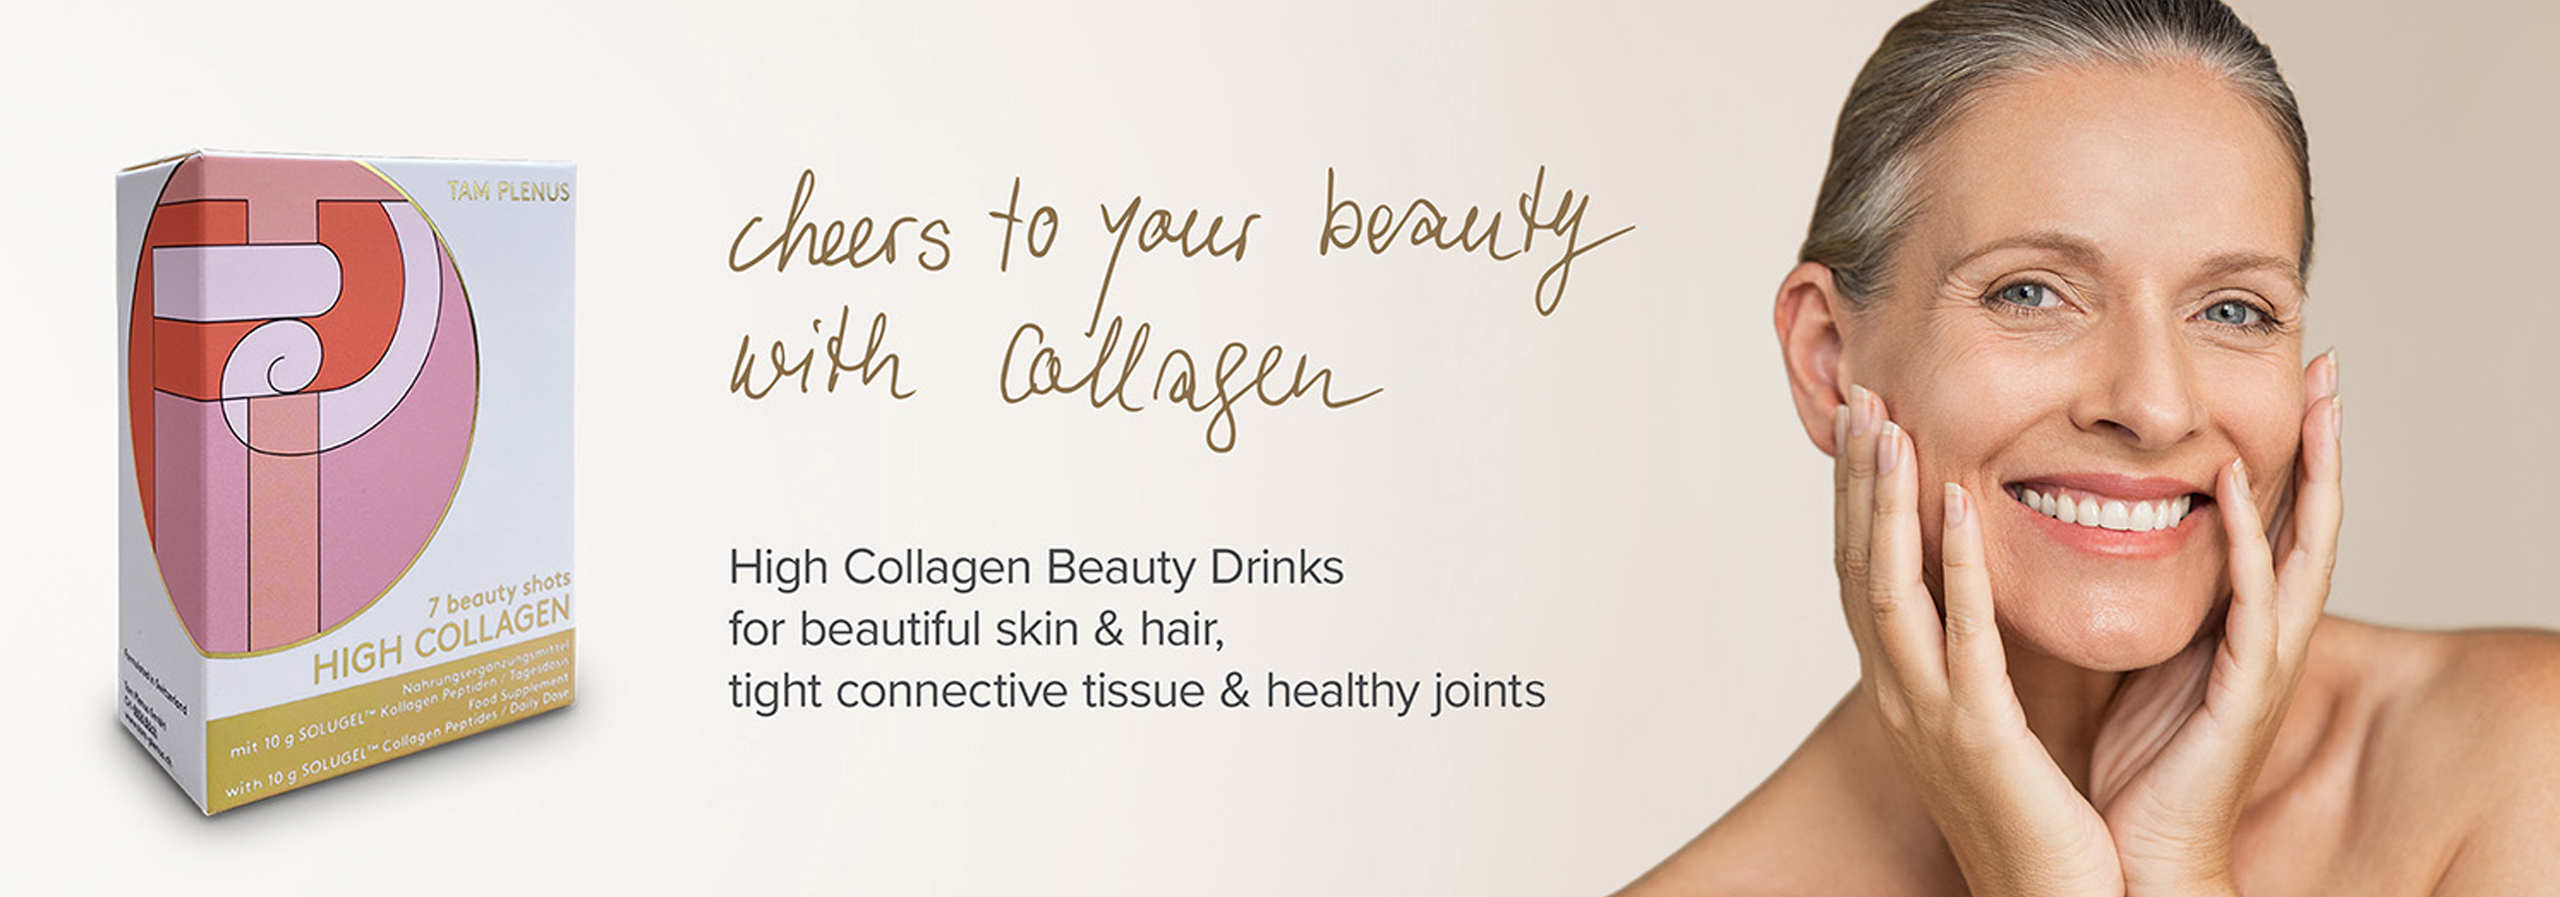 High Collagen